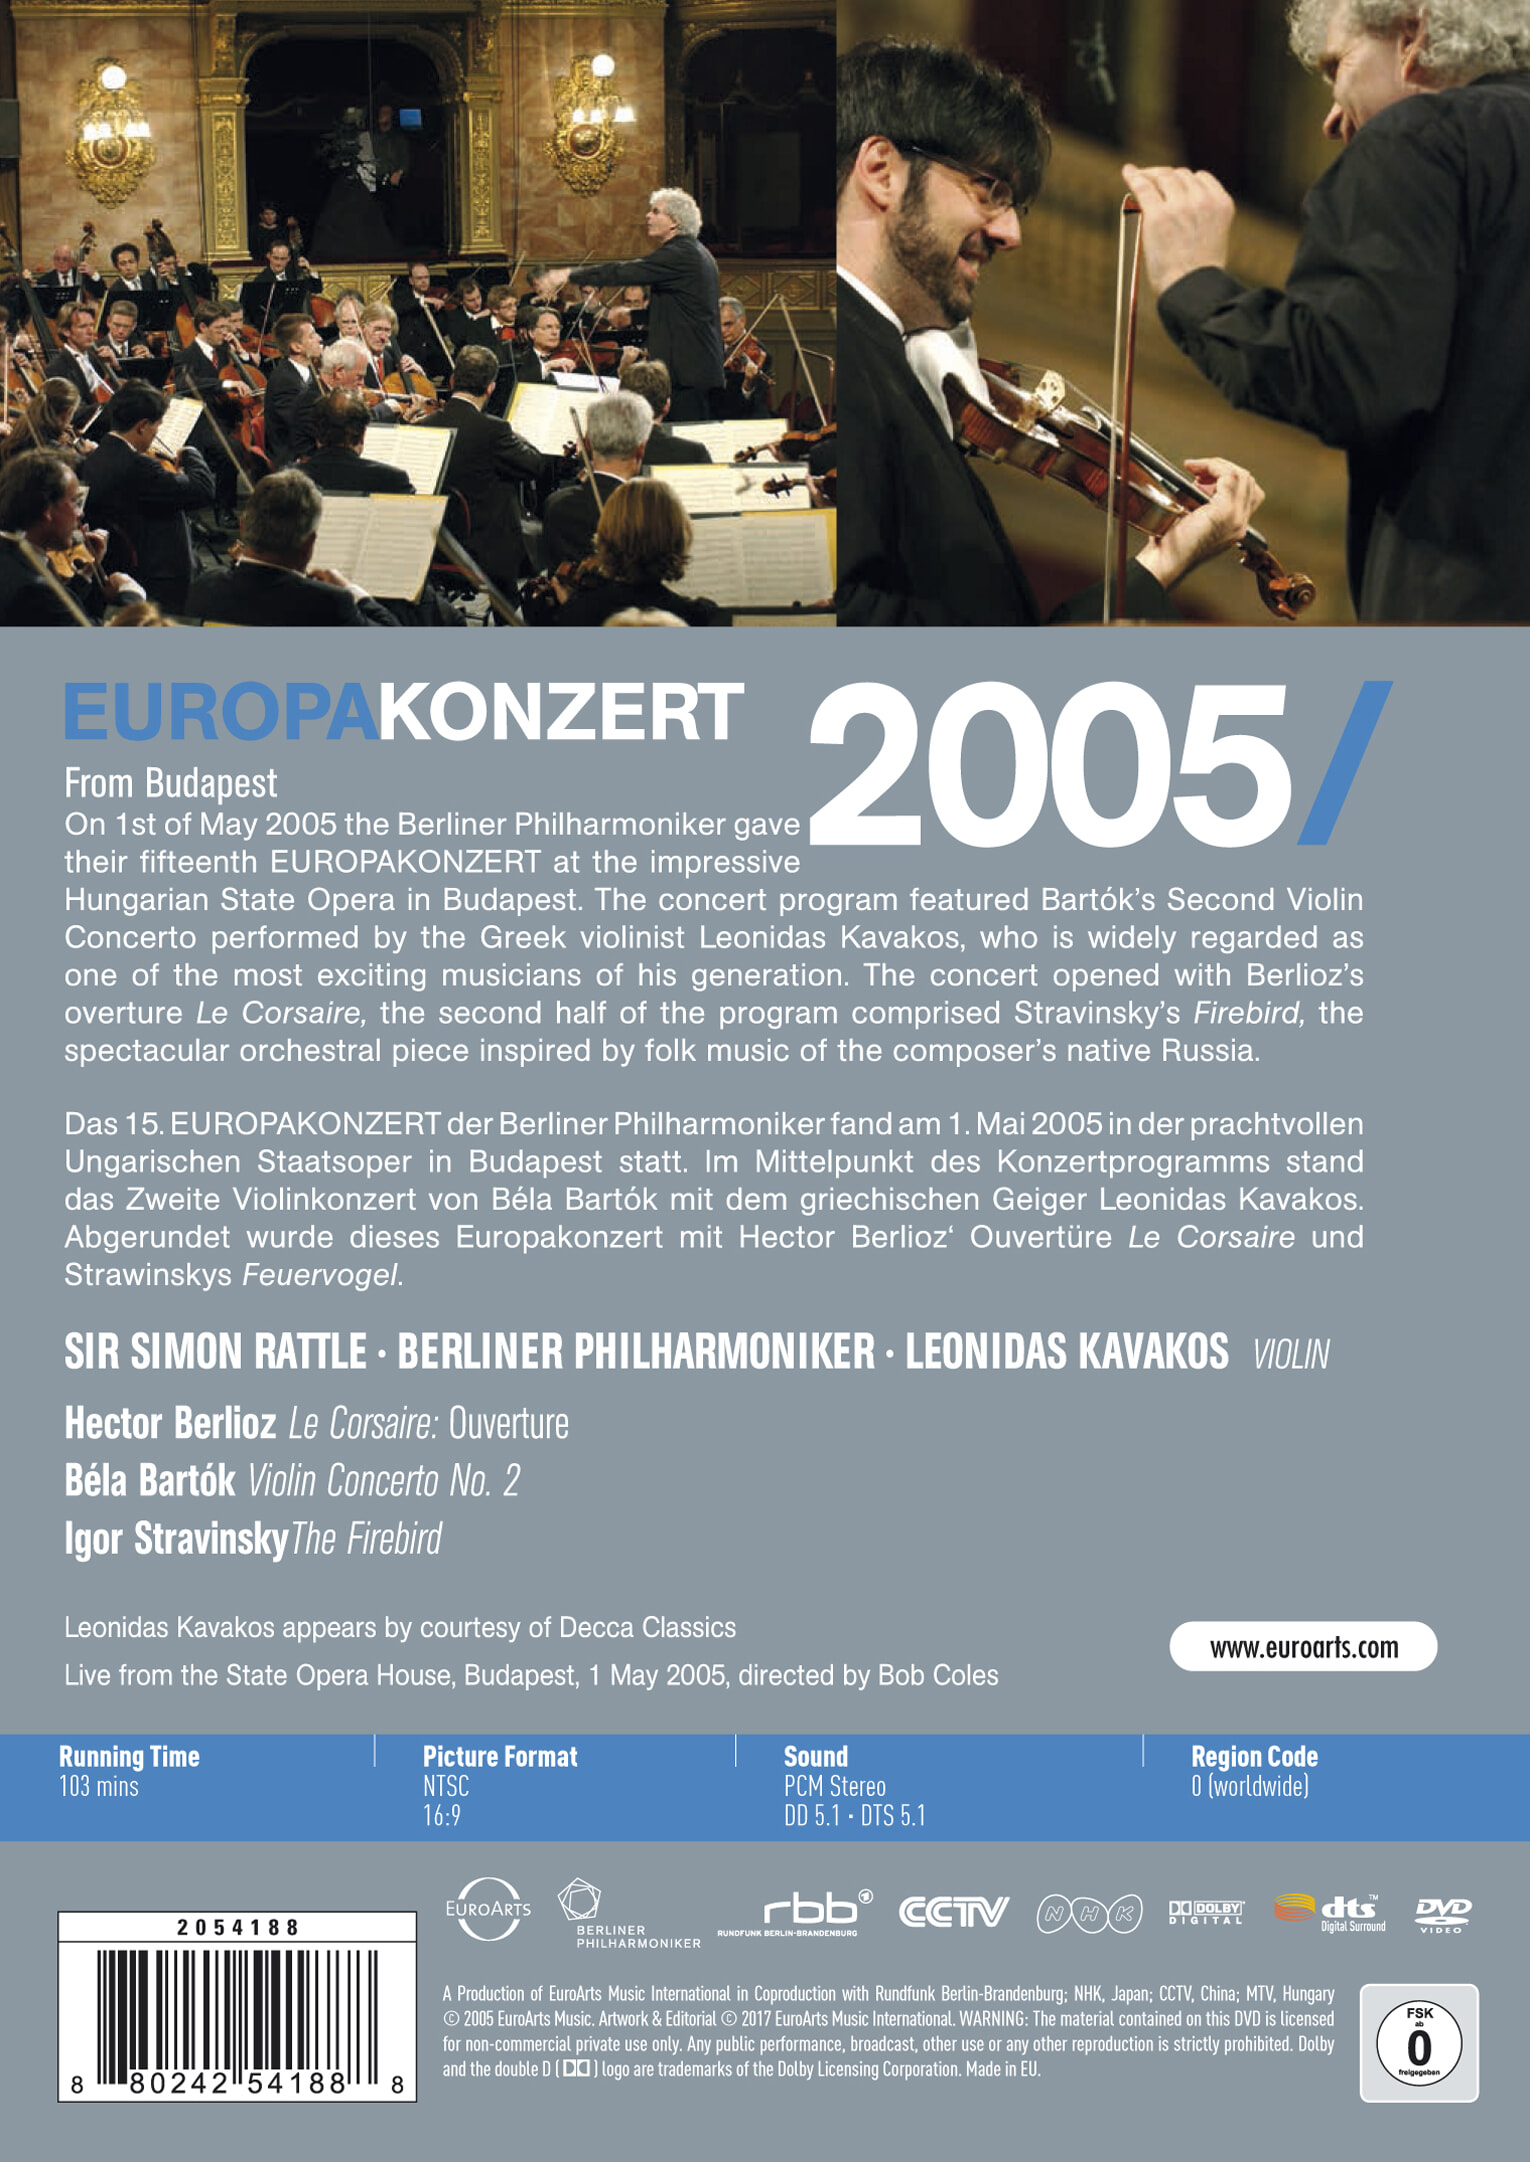 Simon Rattle / Leonidas Kavakos 2005년 유로파 콘서트 (Europa Konzert 2005 from Budapest)